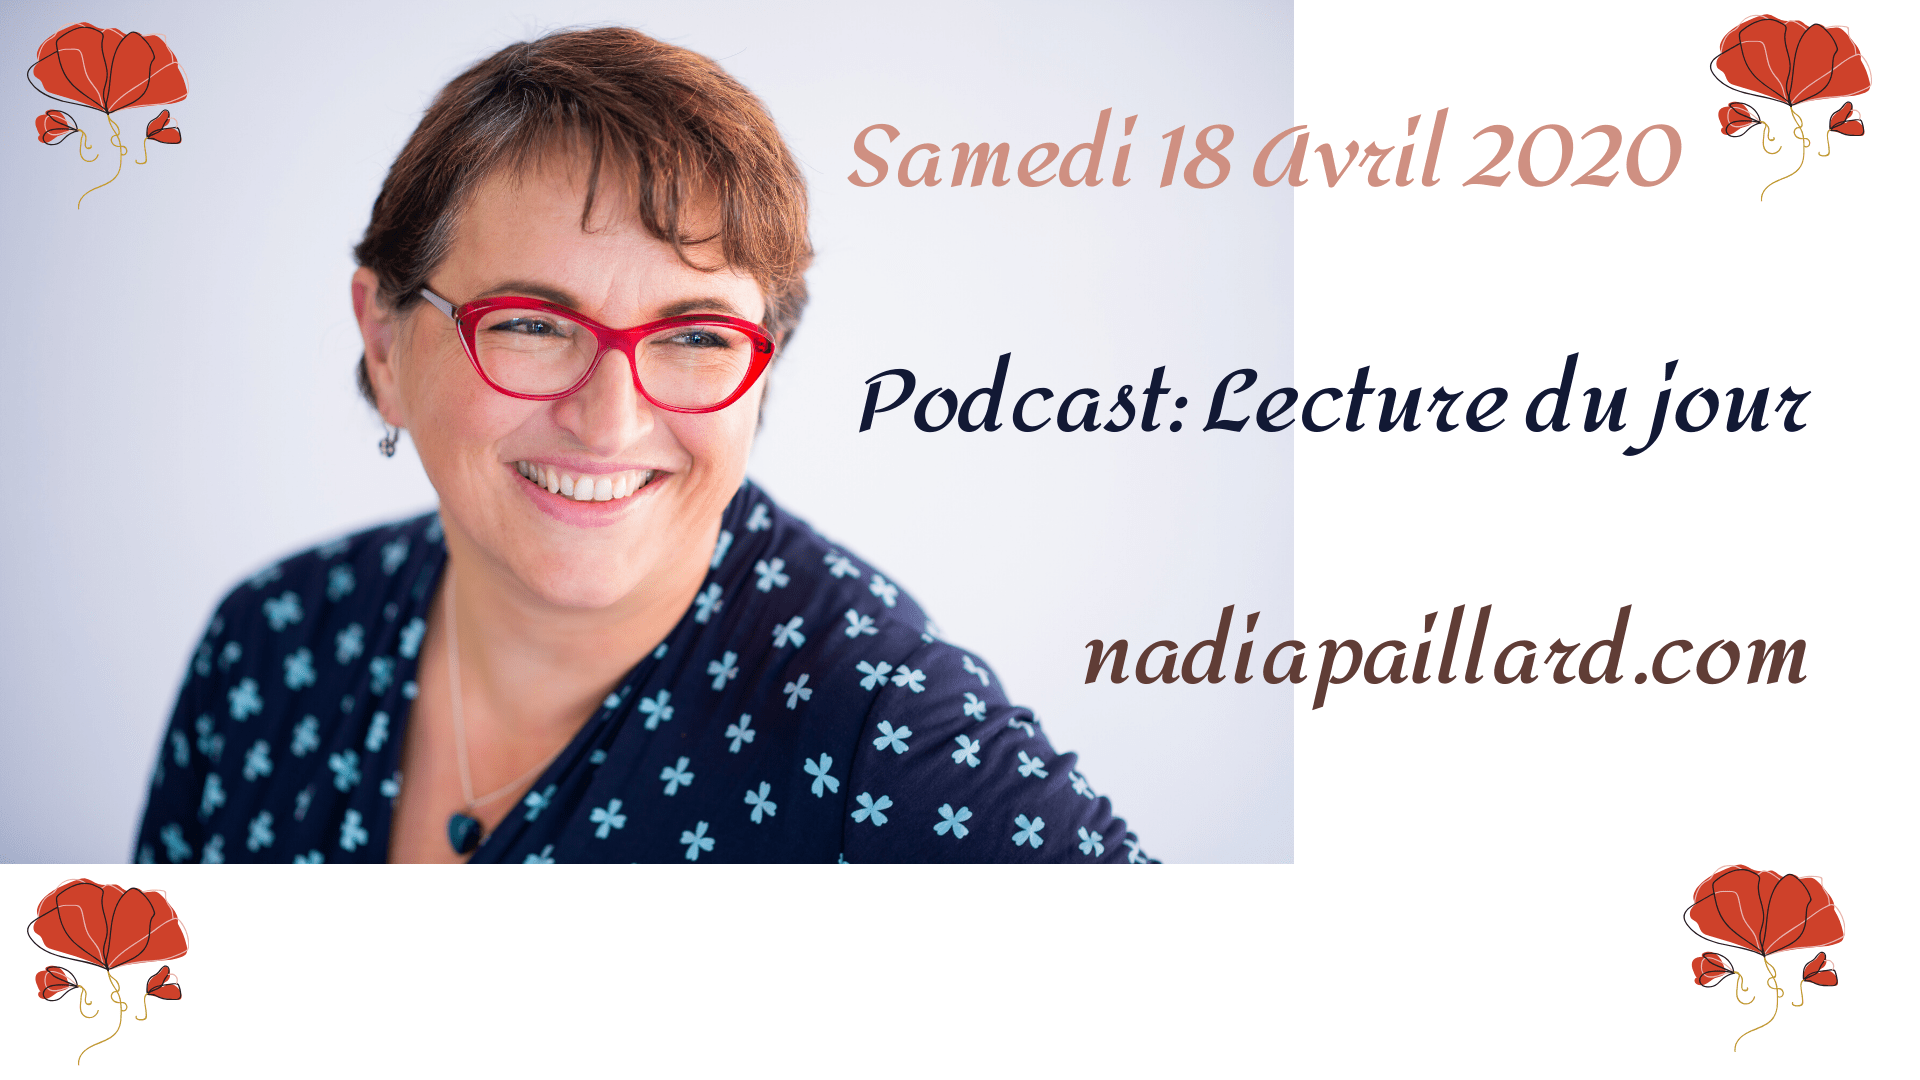 Podcast de nadiapaillard.com : Lecture du jour,Samedi 18 Avril 2020, fête à souhaiter, lecture de 2 extraits de livre